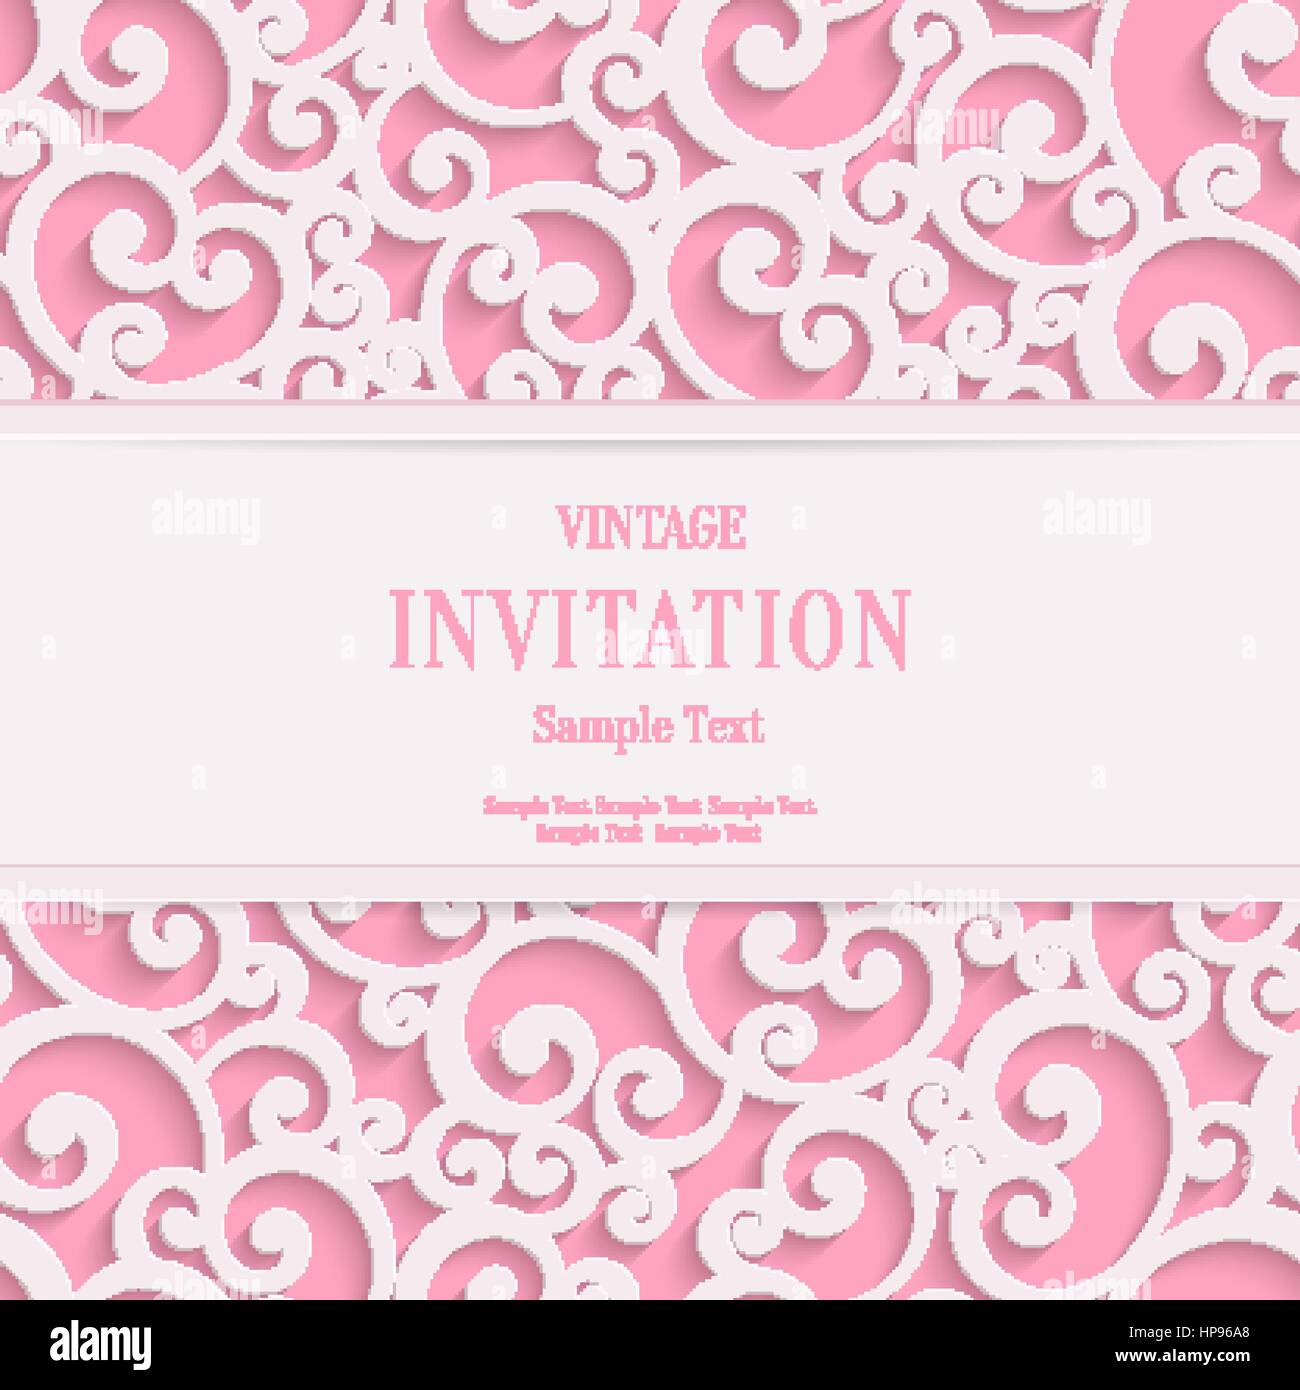 Vettore Rosa Swirl 3d Valentines o invito a nozze carte con sfondo Curl Pattern di Damasco Illustrazione Vettoriale